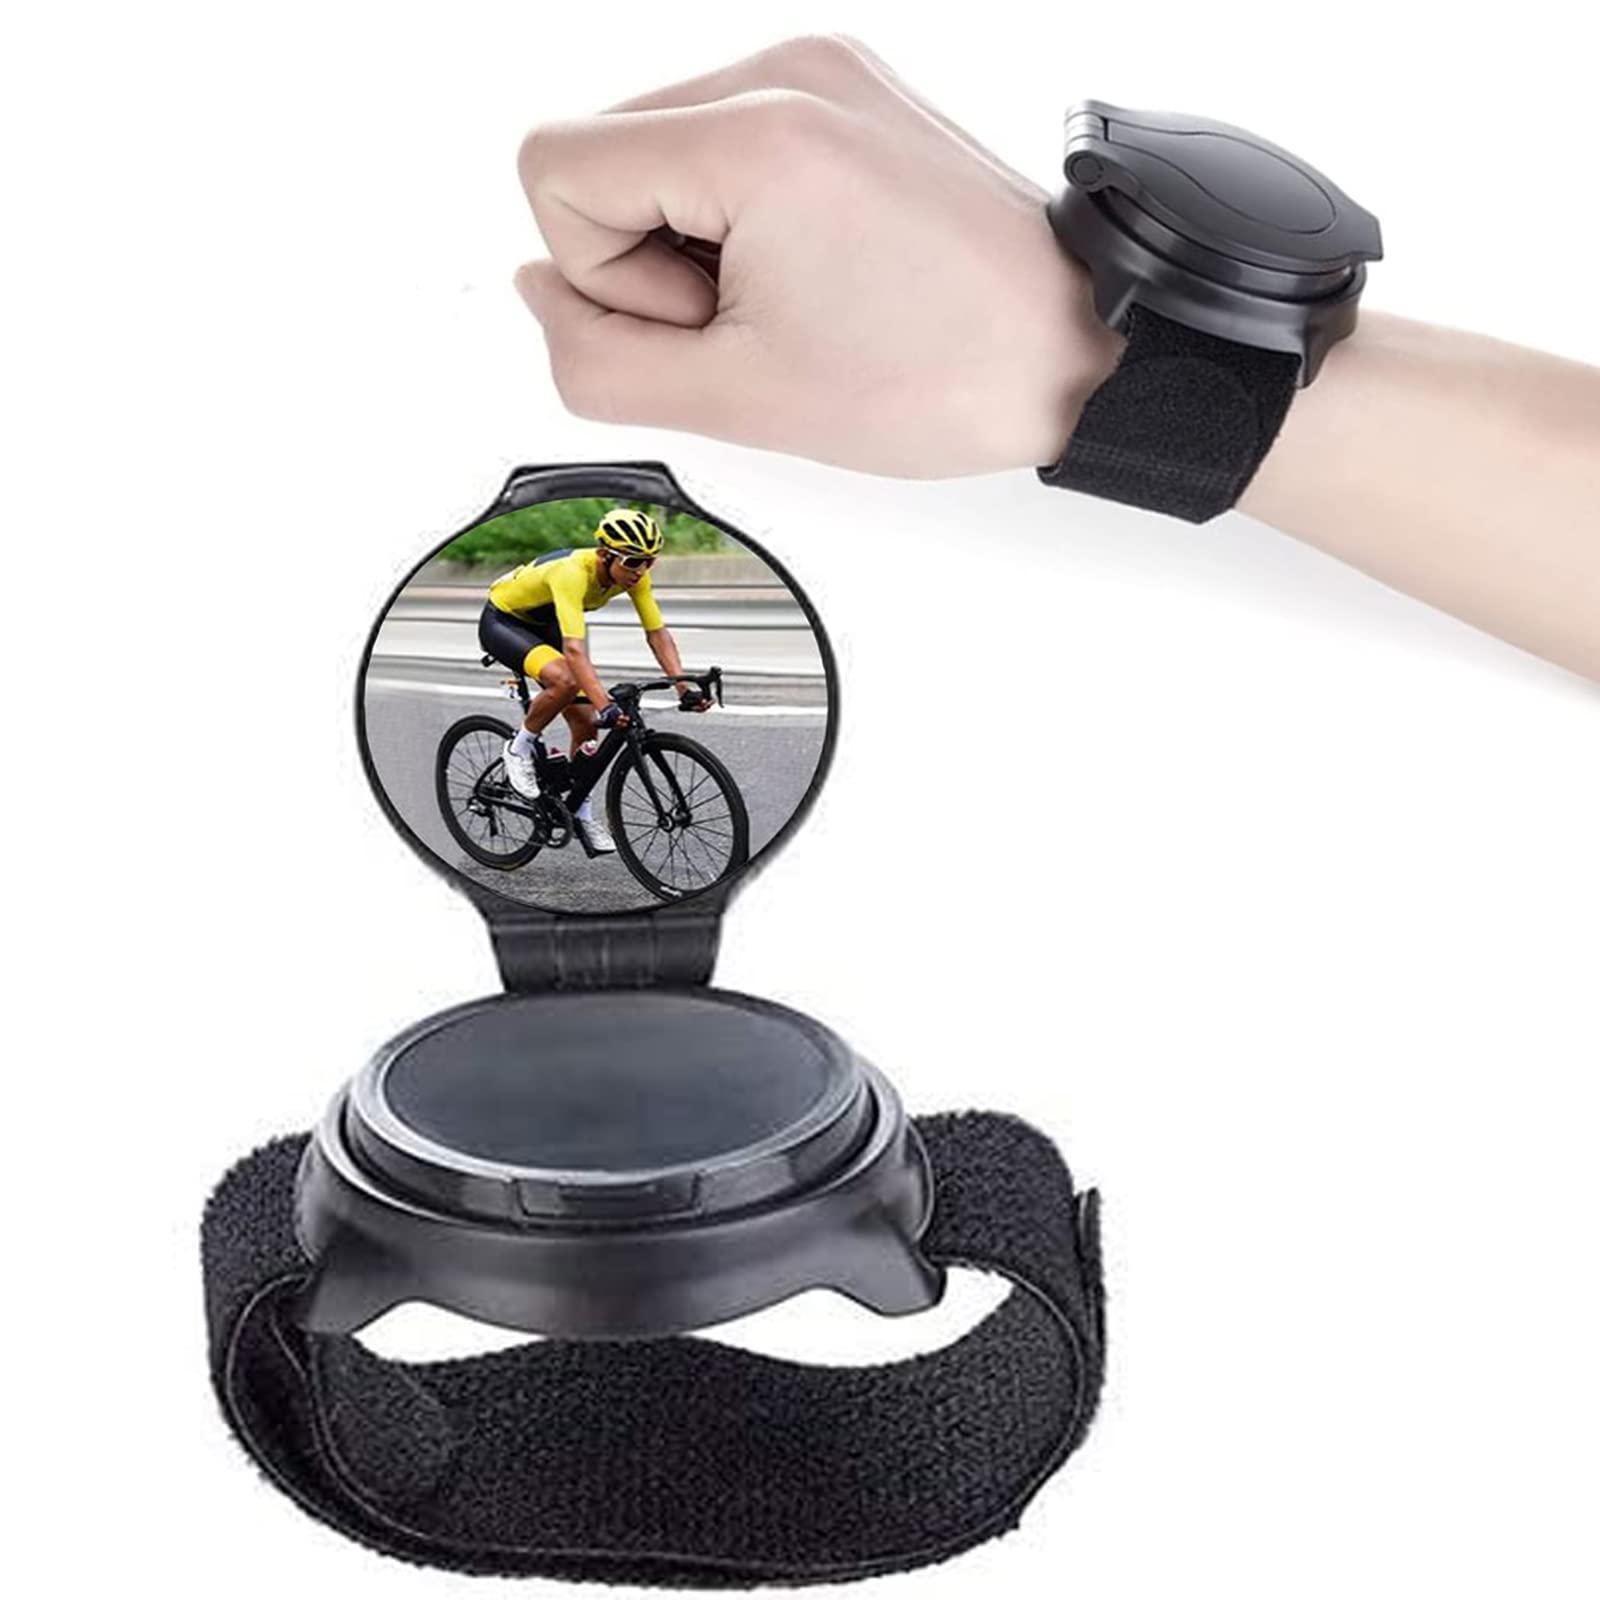 Weitwinkel Radfahren Fahrrad Rückspiegel,Fahrrad Rückspiegel Handgelenk,Handgelenk Spiegel Fahrrad Rückspiegel,360°Verstellbarer Rückspiegel,Drehbarer und Faltbarer Fahrradrückspiegel,für Fahrräder von CHmiss